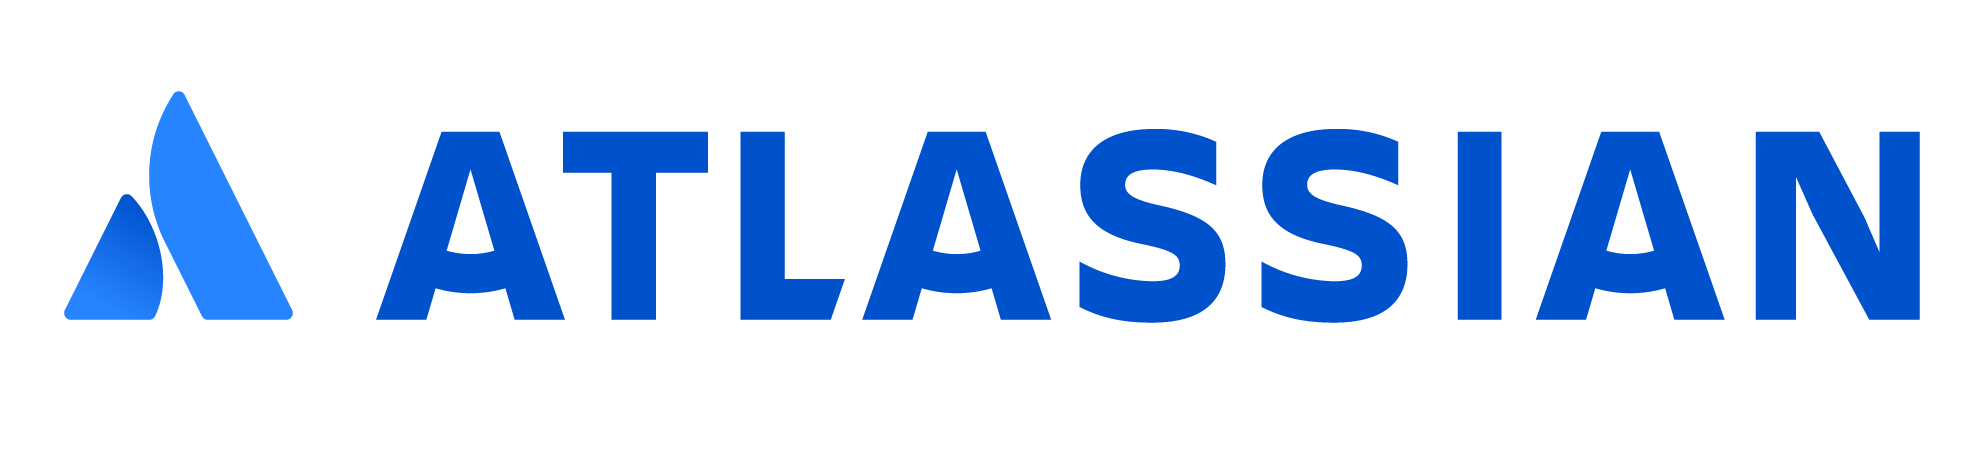 atlassian-blue-logo